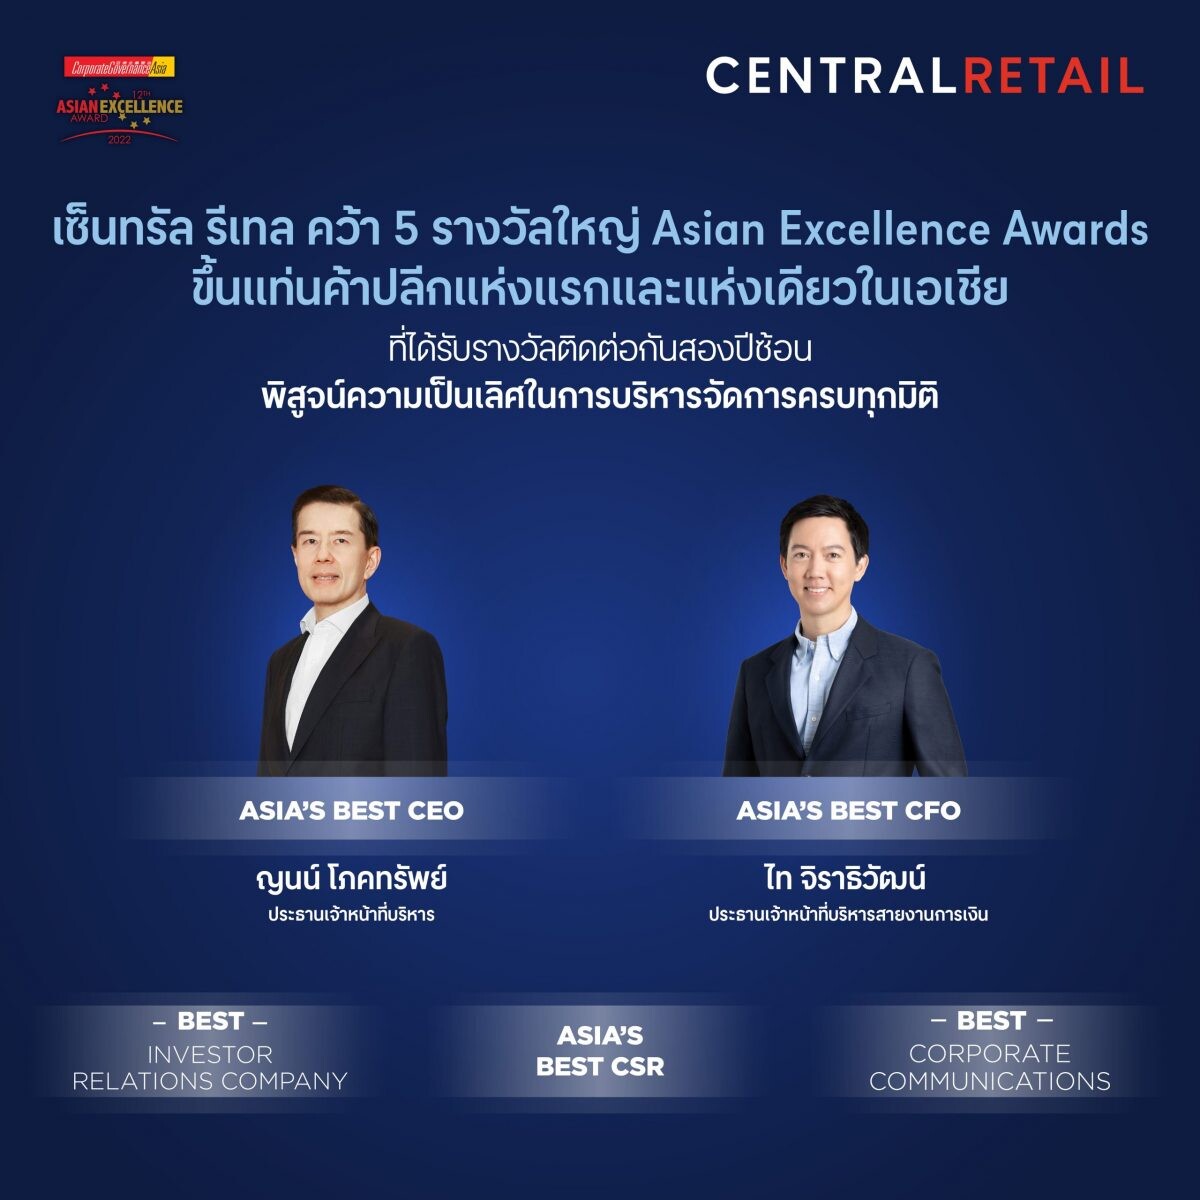 เซ็นทรัล รีเทล ขึ้นแท่นค้าปลีกแห่งแรกและแห่งเดียวในเอเชีย คว้า 5 รางวัลใหญ่จาก Asian Excellence Awards 2022 ติดต่อกันสองปีซ้อน